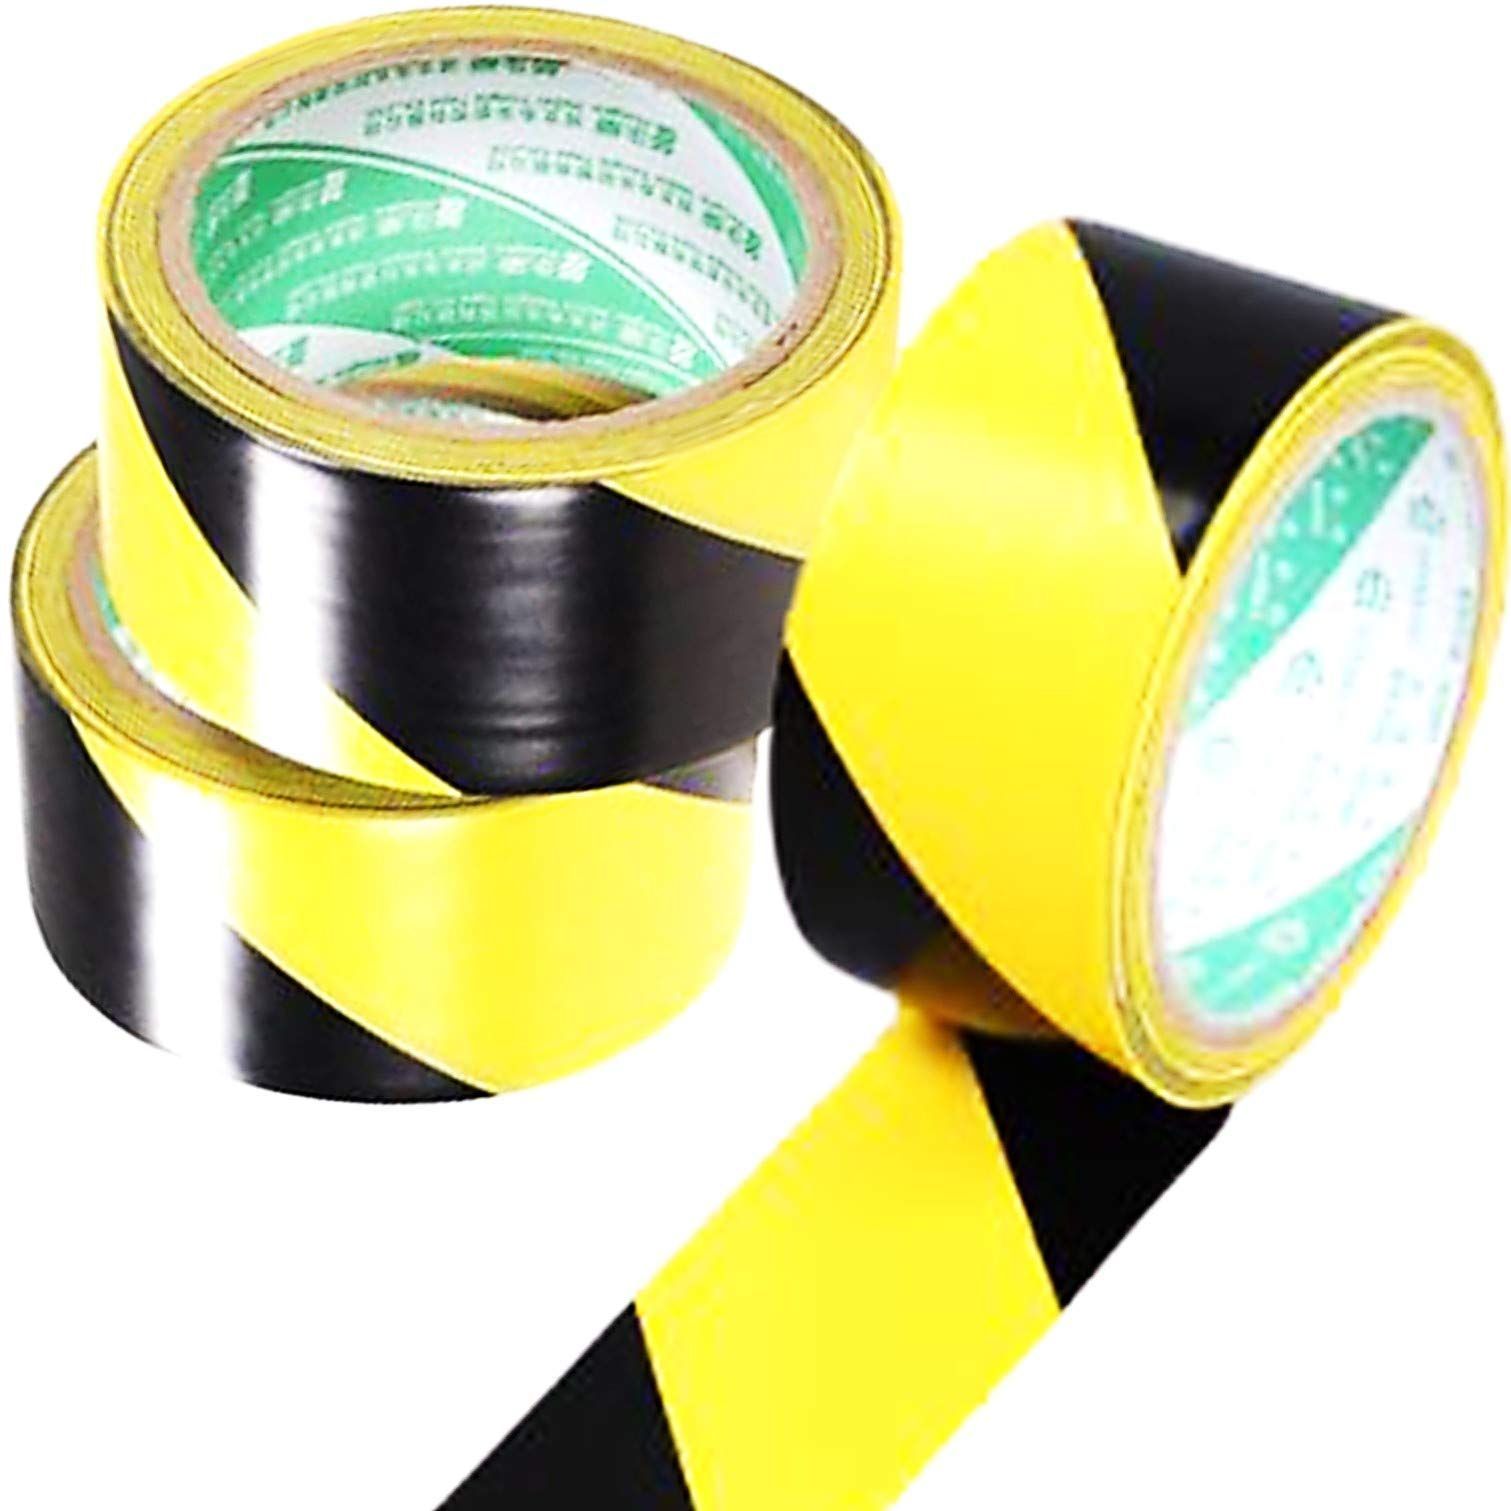 保証 5cm 25m 高輝度 反射トラテープ 反射テープ シール 警告 安全表示 立ち入り禁止 車用 駐車禁止 駐車場 事故防止 夜間安全 黄色 黒 